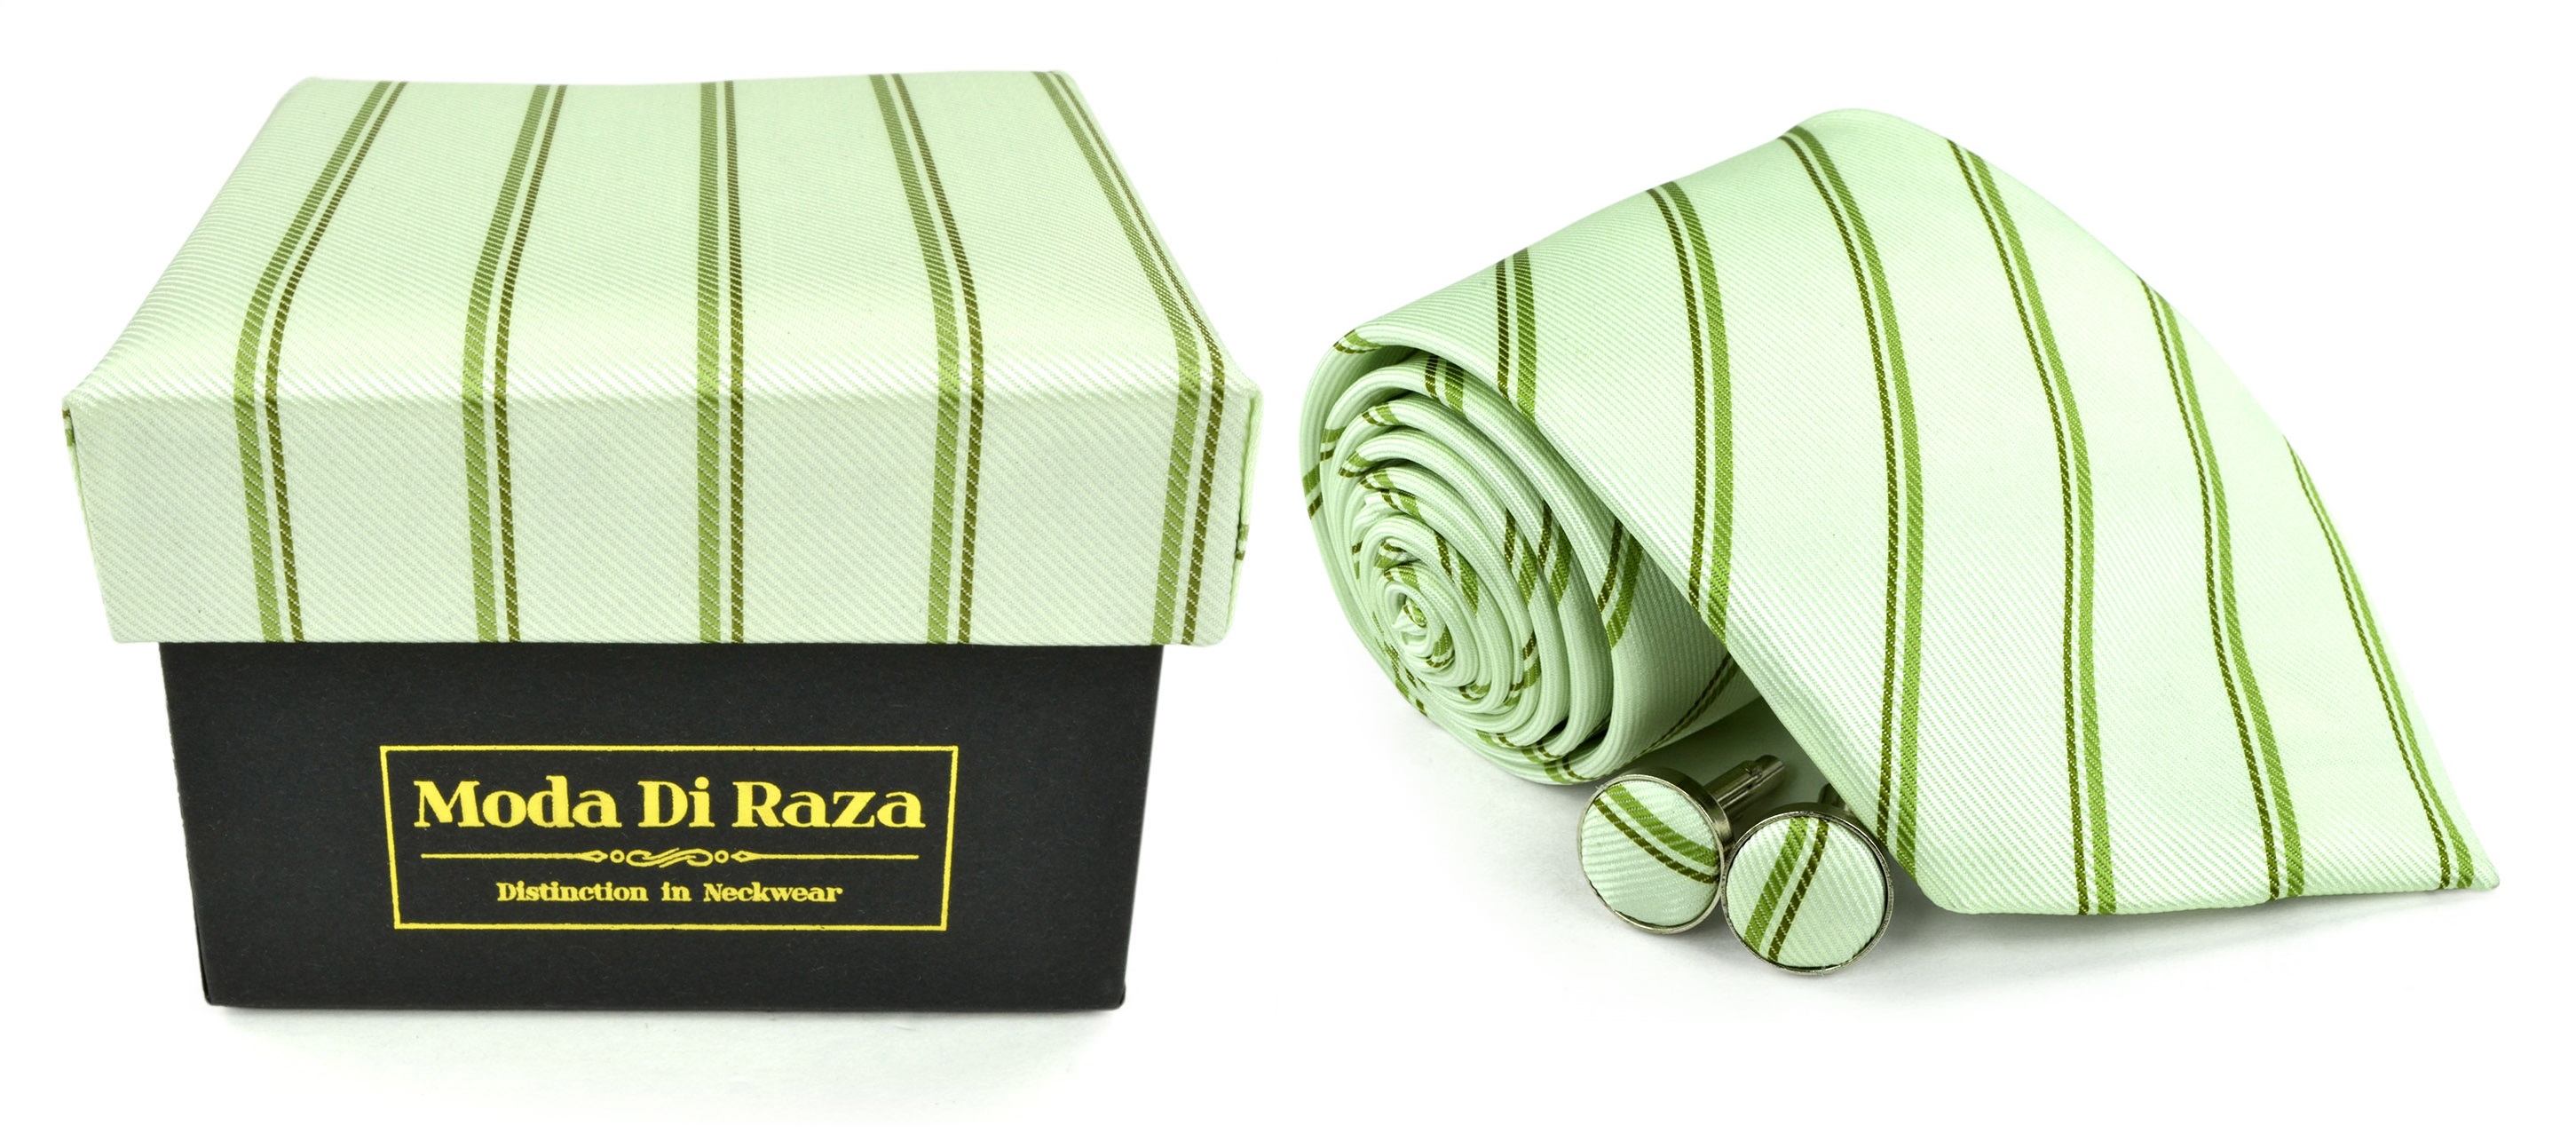 Moda Di Raza Men's NeckTie 3.0 With Cufflink n Gift Box Wedding Formal Events - Mint